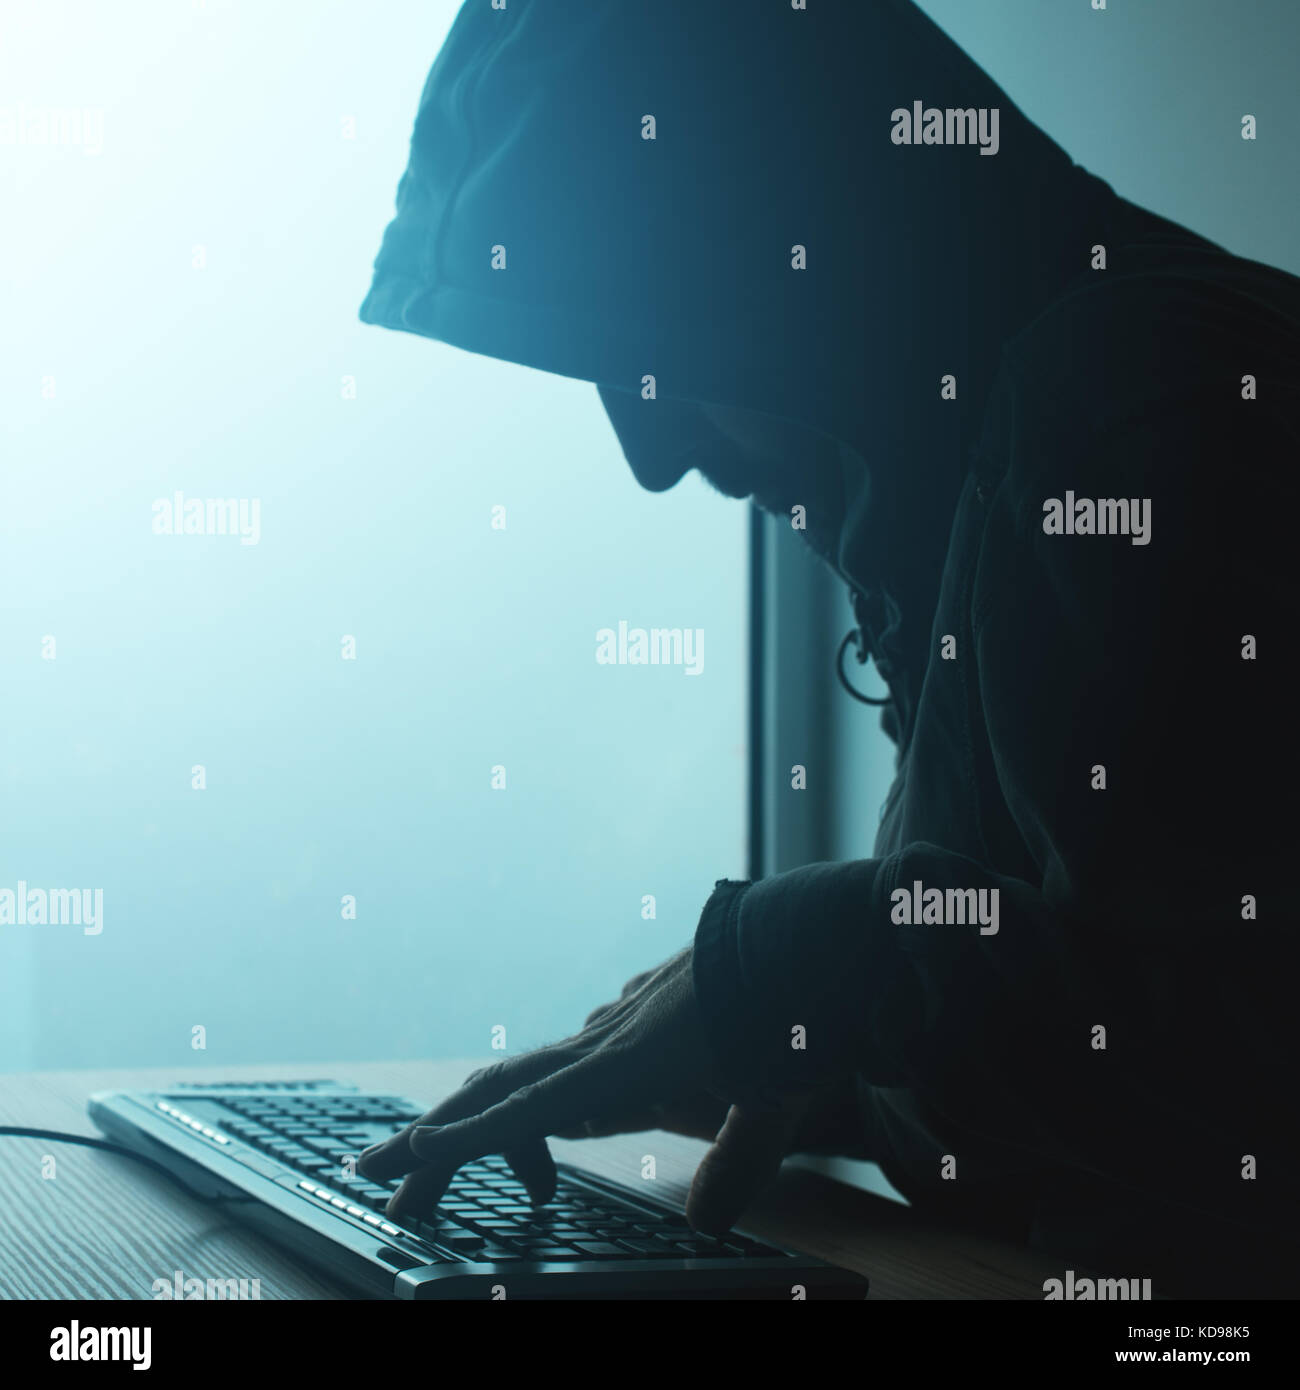 Hooded computer Hacker hacking Network. Männliche mit Schwarz mit Computer für Identitätsdiebstahl oder andere kriminelle Online-aktivitäten Hoodie. Stockfoto